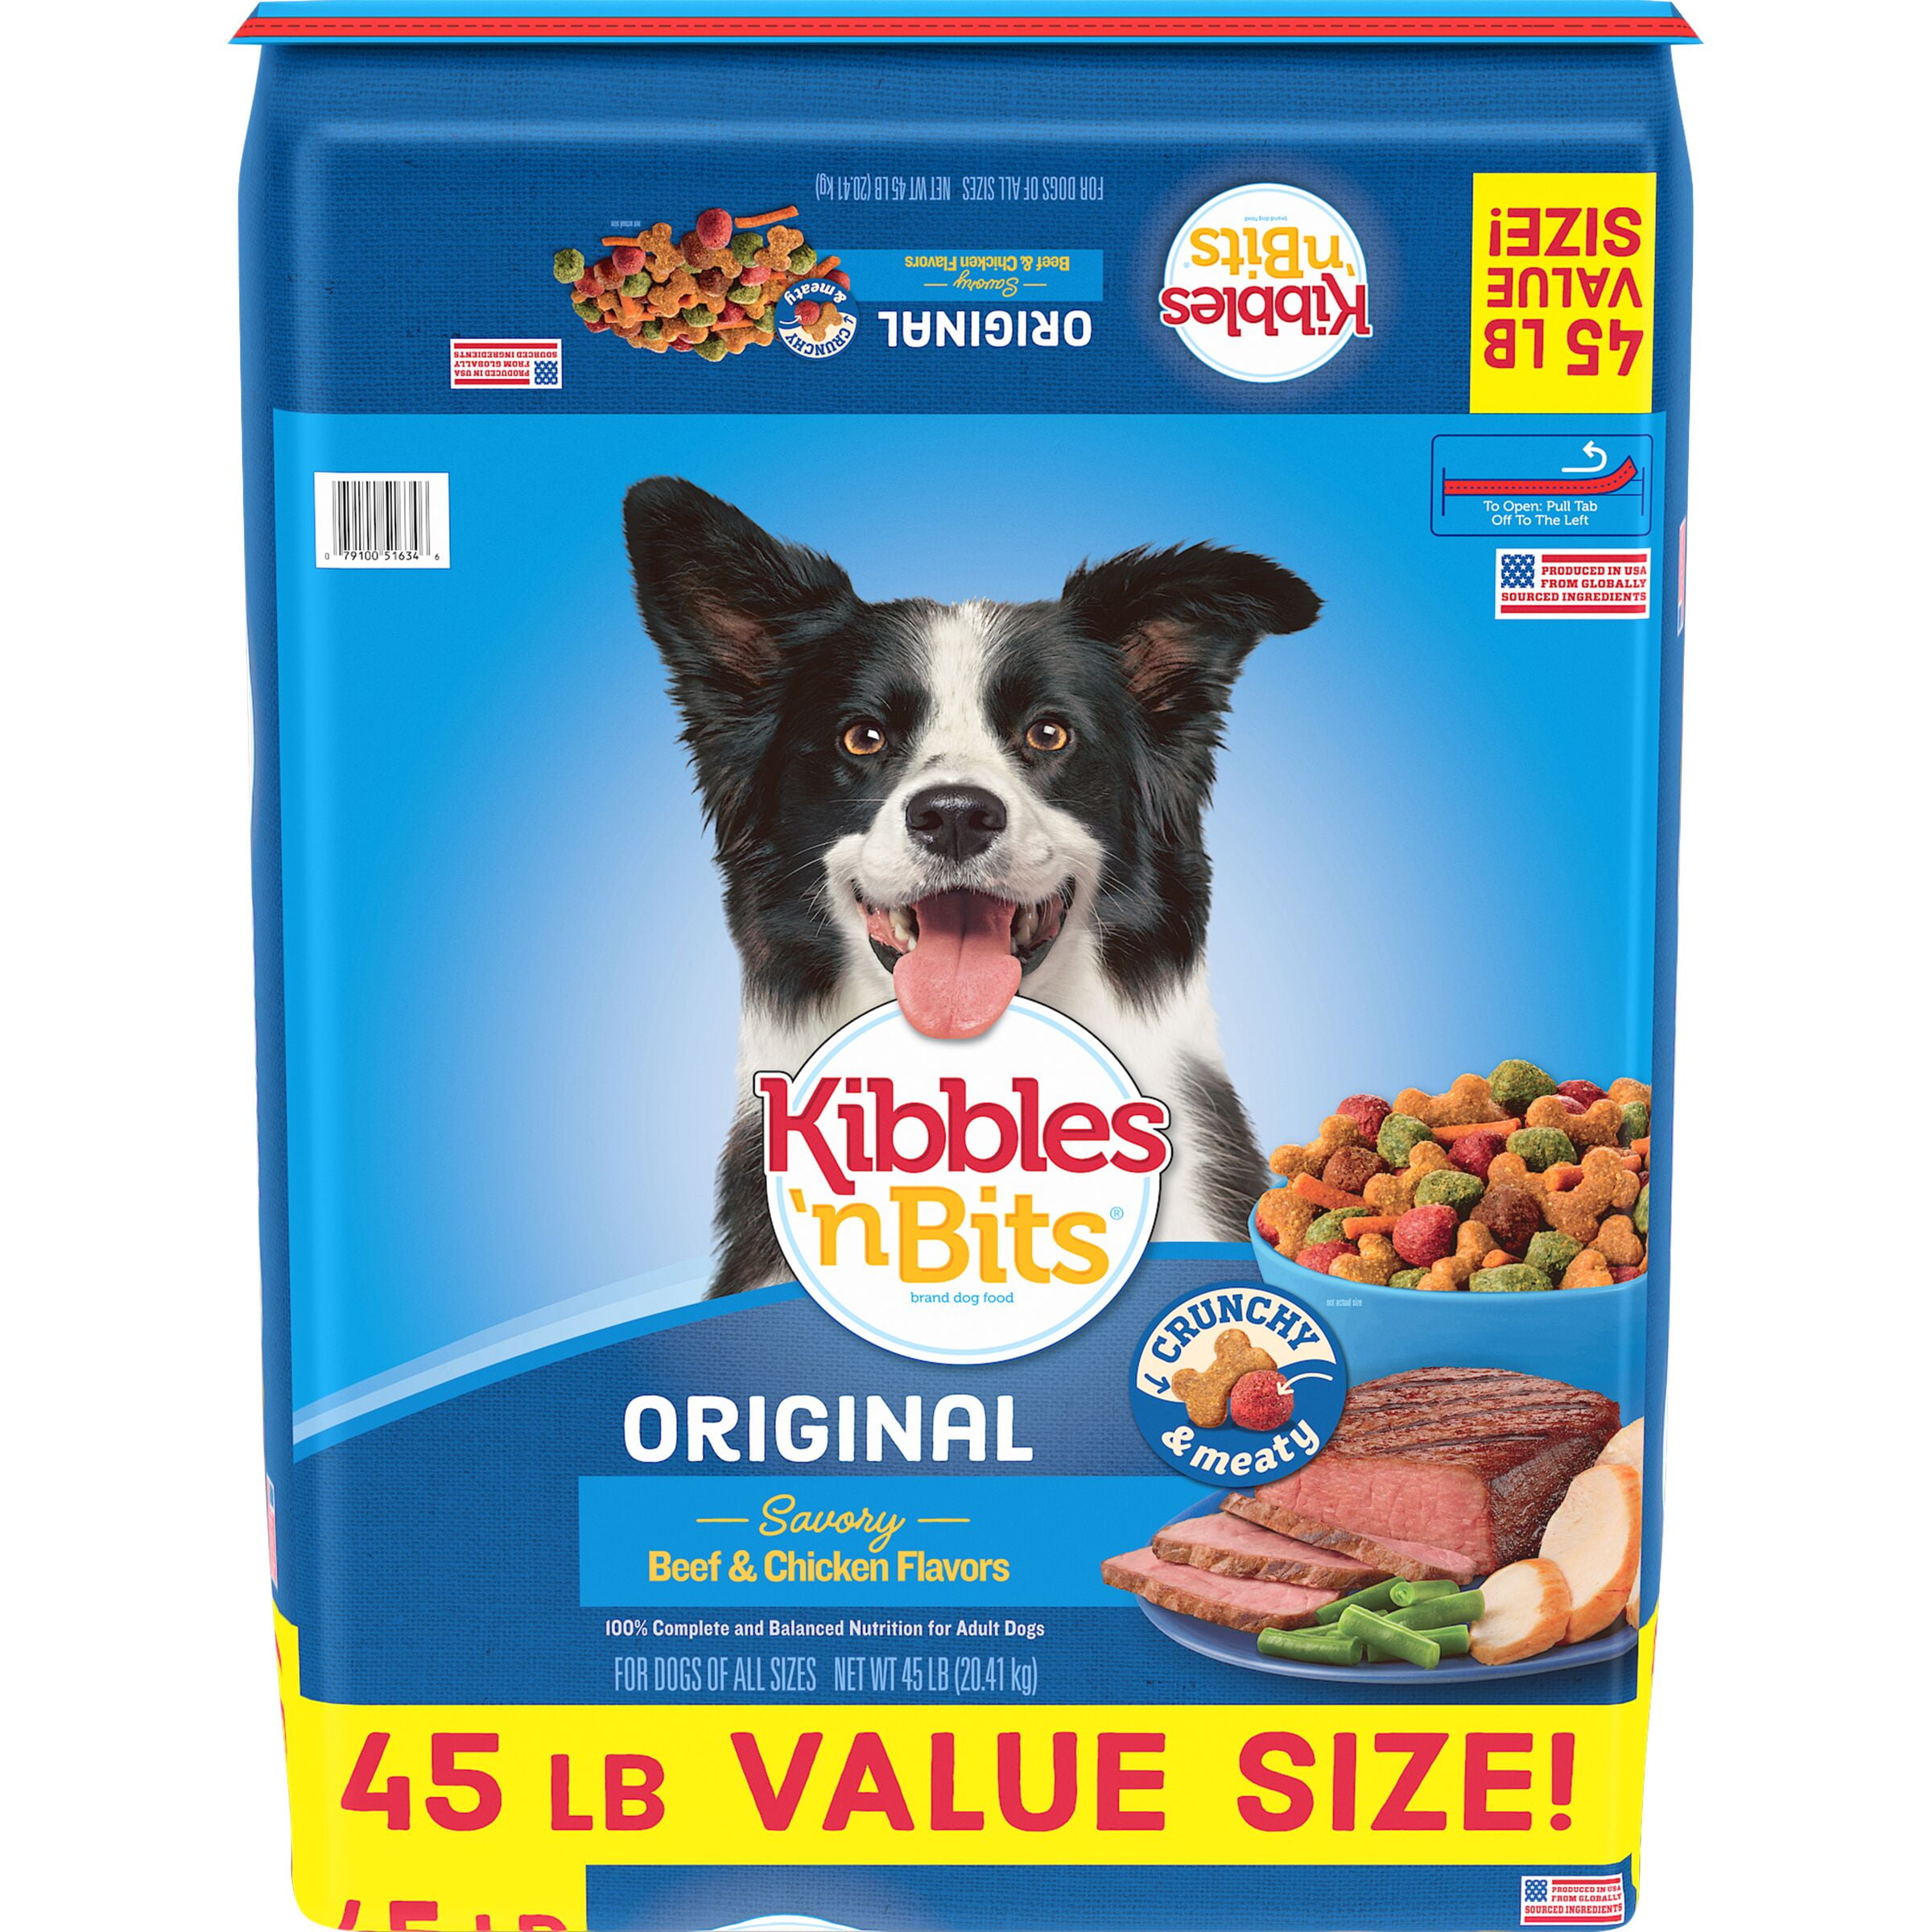 Kibbles 'n Bits Original Dry Dog Food, 25 Pound